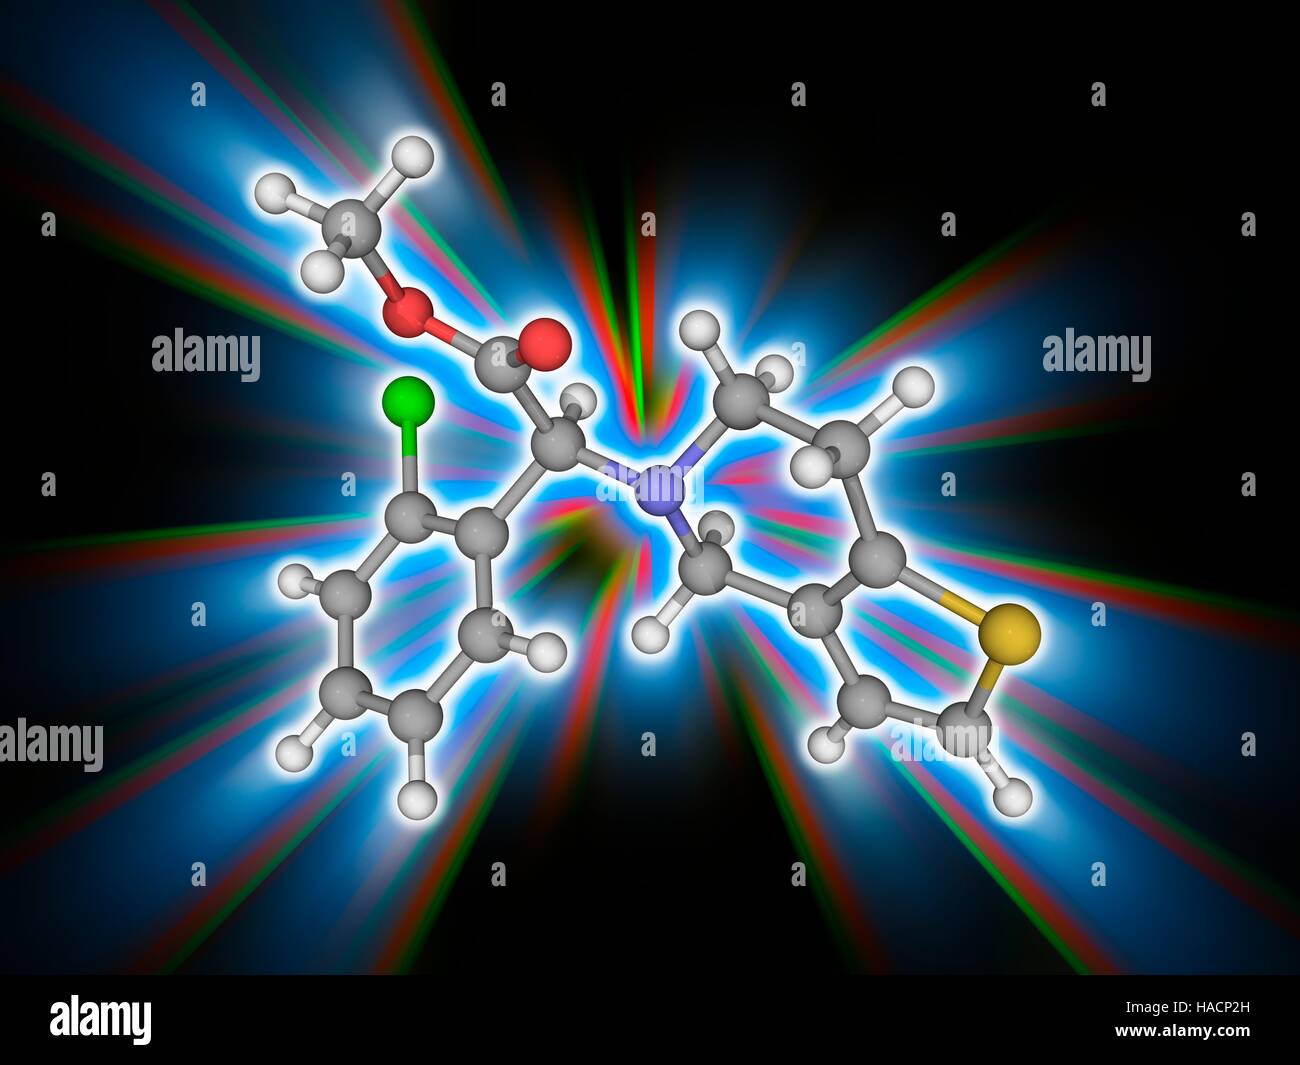 Clopidogrel. Il modello molecolare del farmaco clopidogrel (C16.H16.cl.N.O2.S), un agente anti-aggregante piastrinico utilizzato per inibire la formazione di coaguli di sangue. Gli atomi sono rappresentati da sfere e sono codificati a colori: carbonio (grigio), Idrogeno (bianco), Azoto (blu), Ossigeno (rosso), cloro (verde) e zolfo (giallo). Illustrazione. Foto Stock